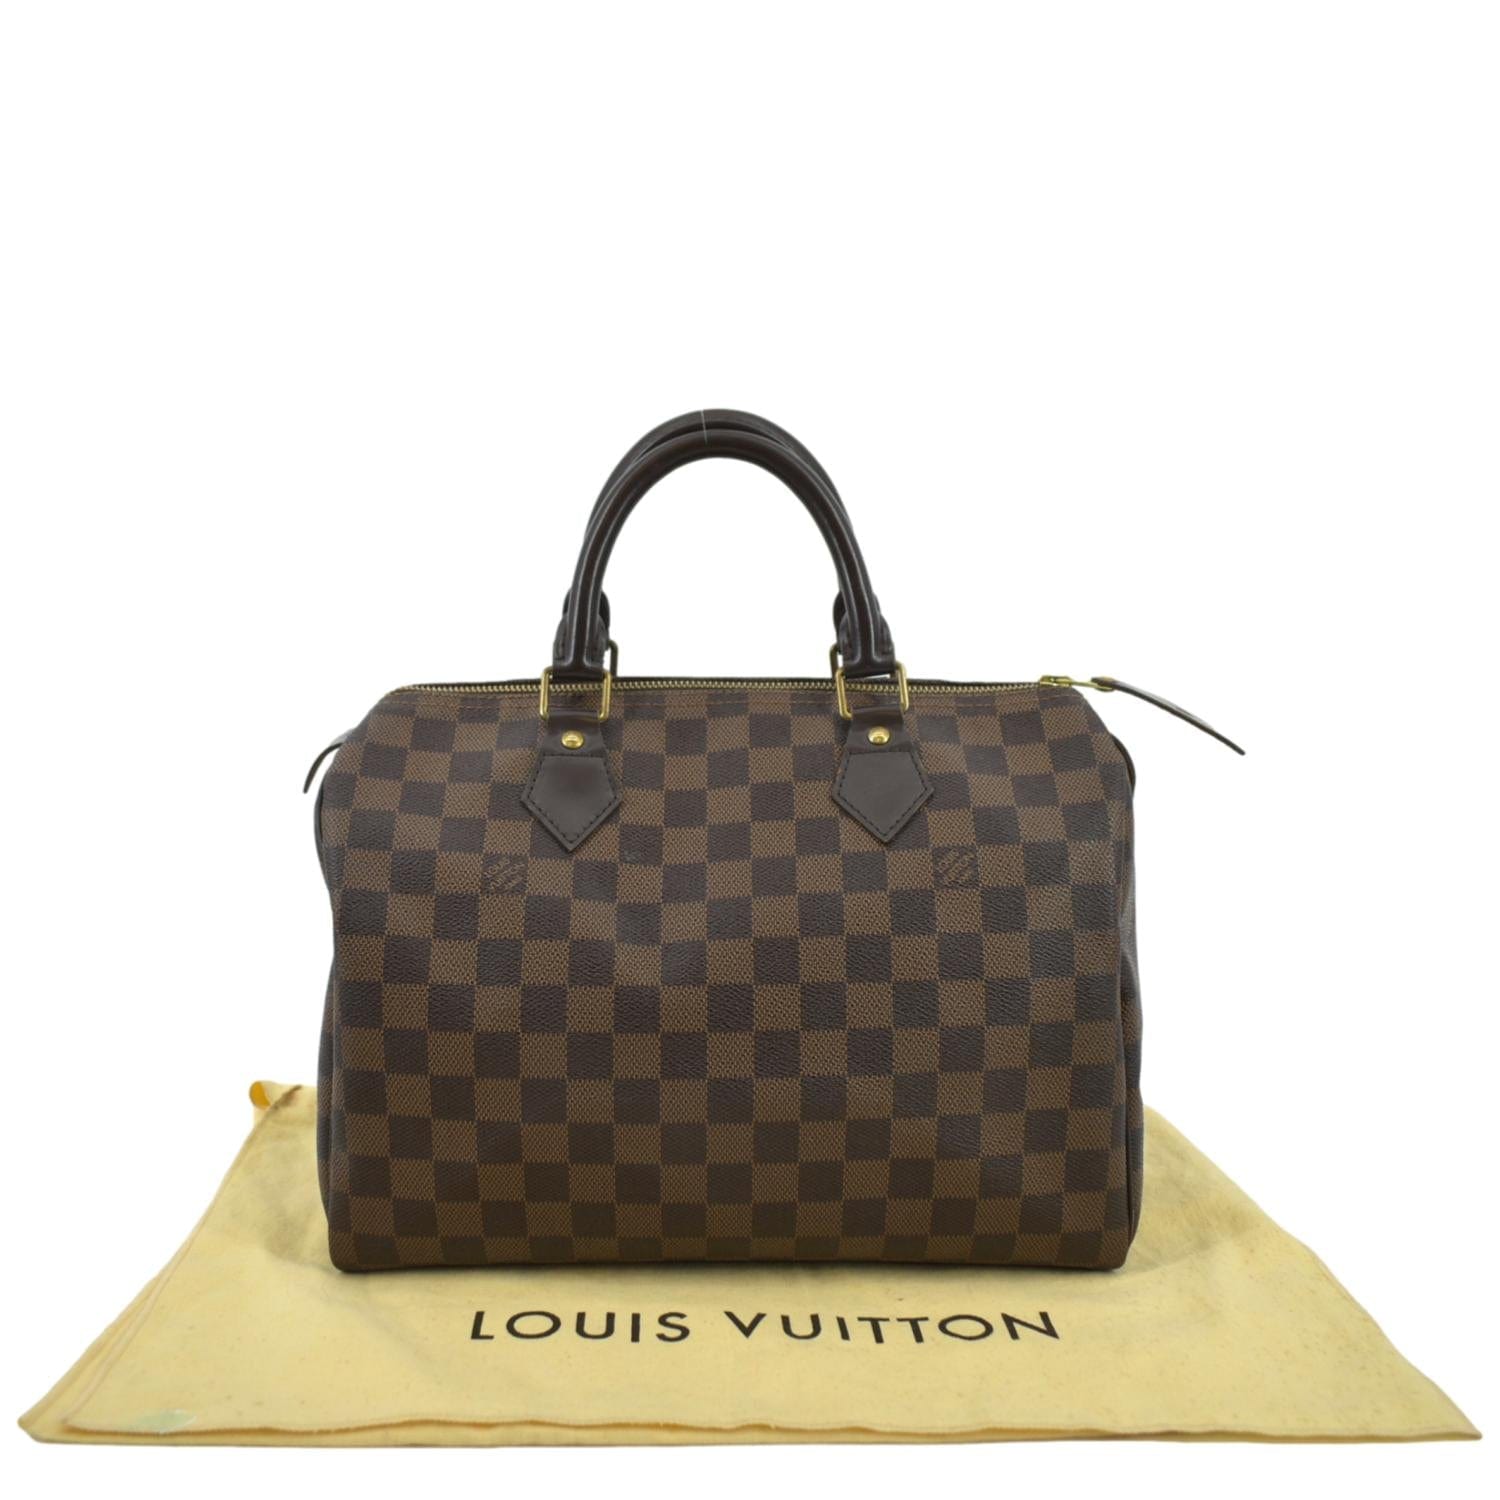 Louis Vuitton Speedy 25 Damier Ebene Satchel Bag Brown